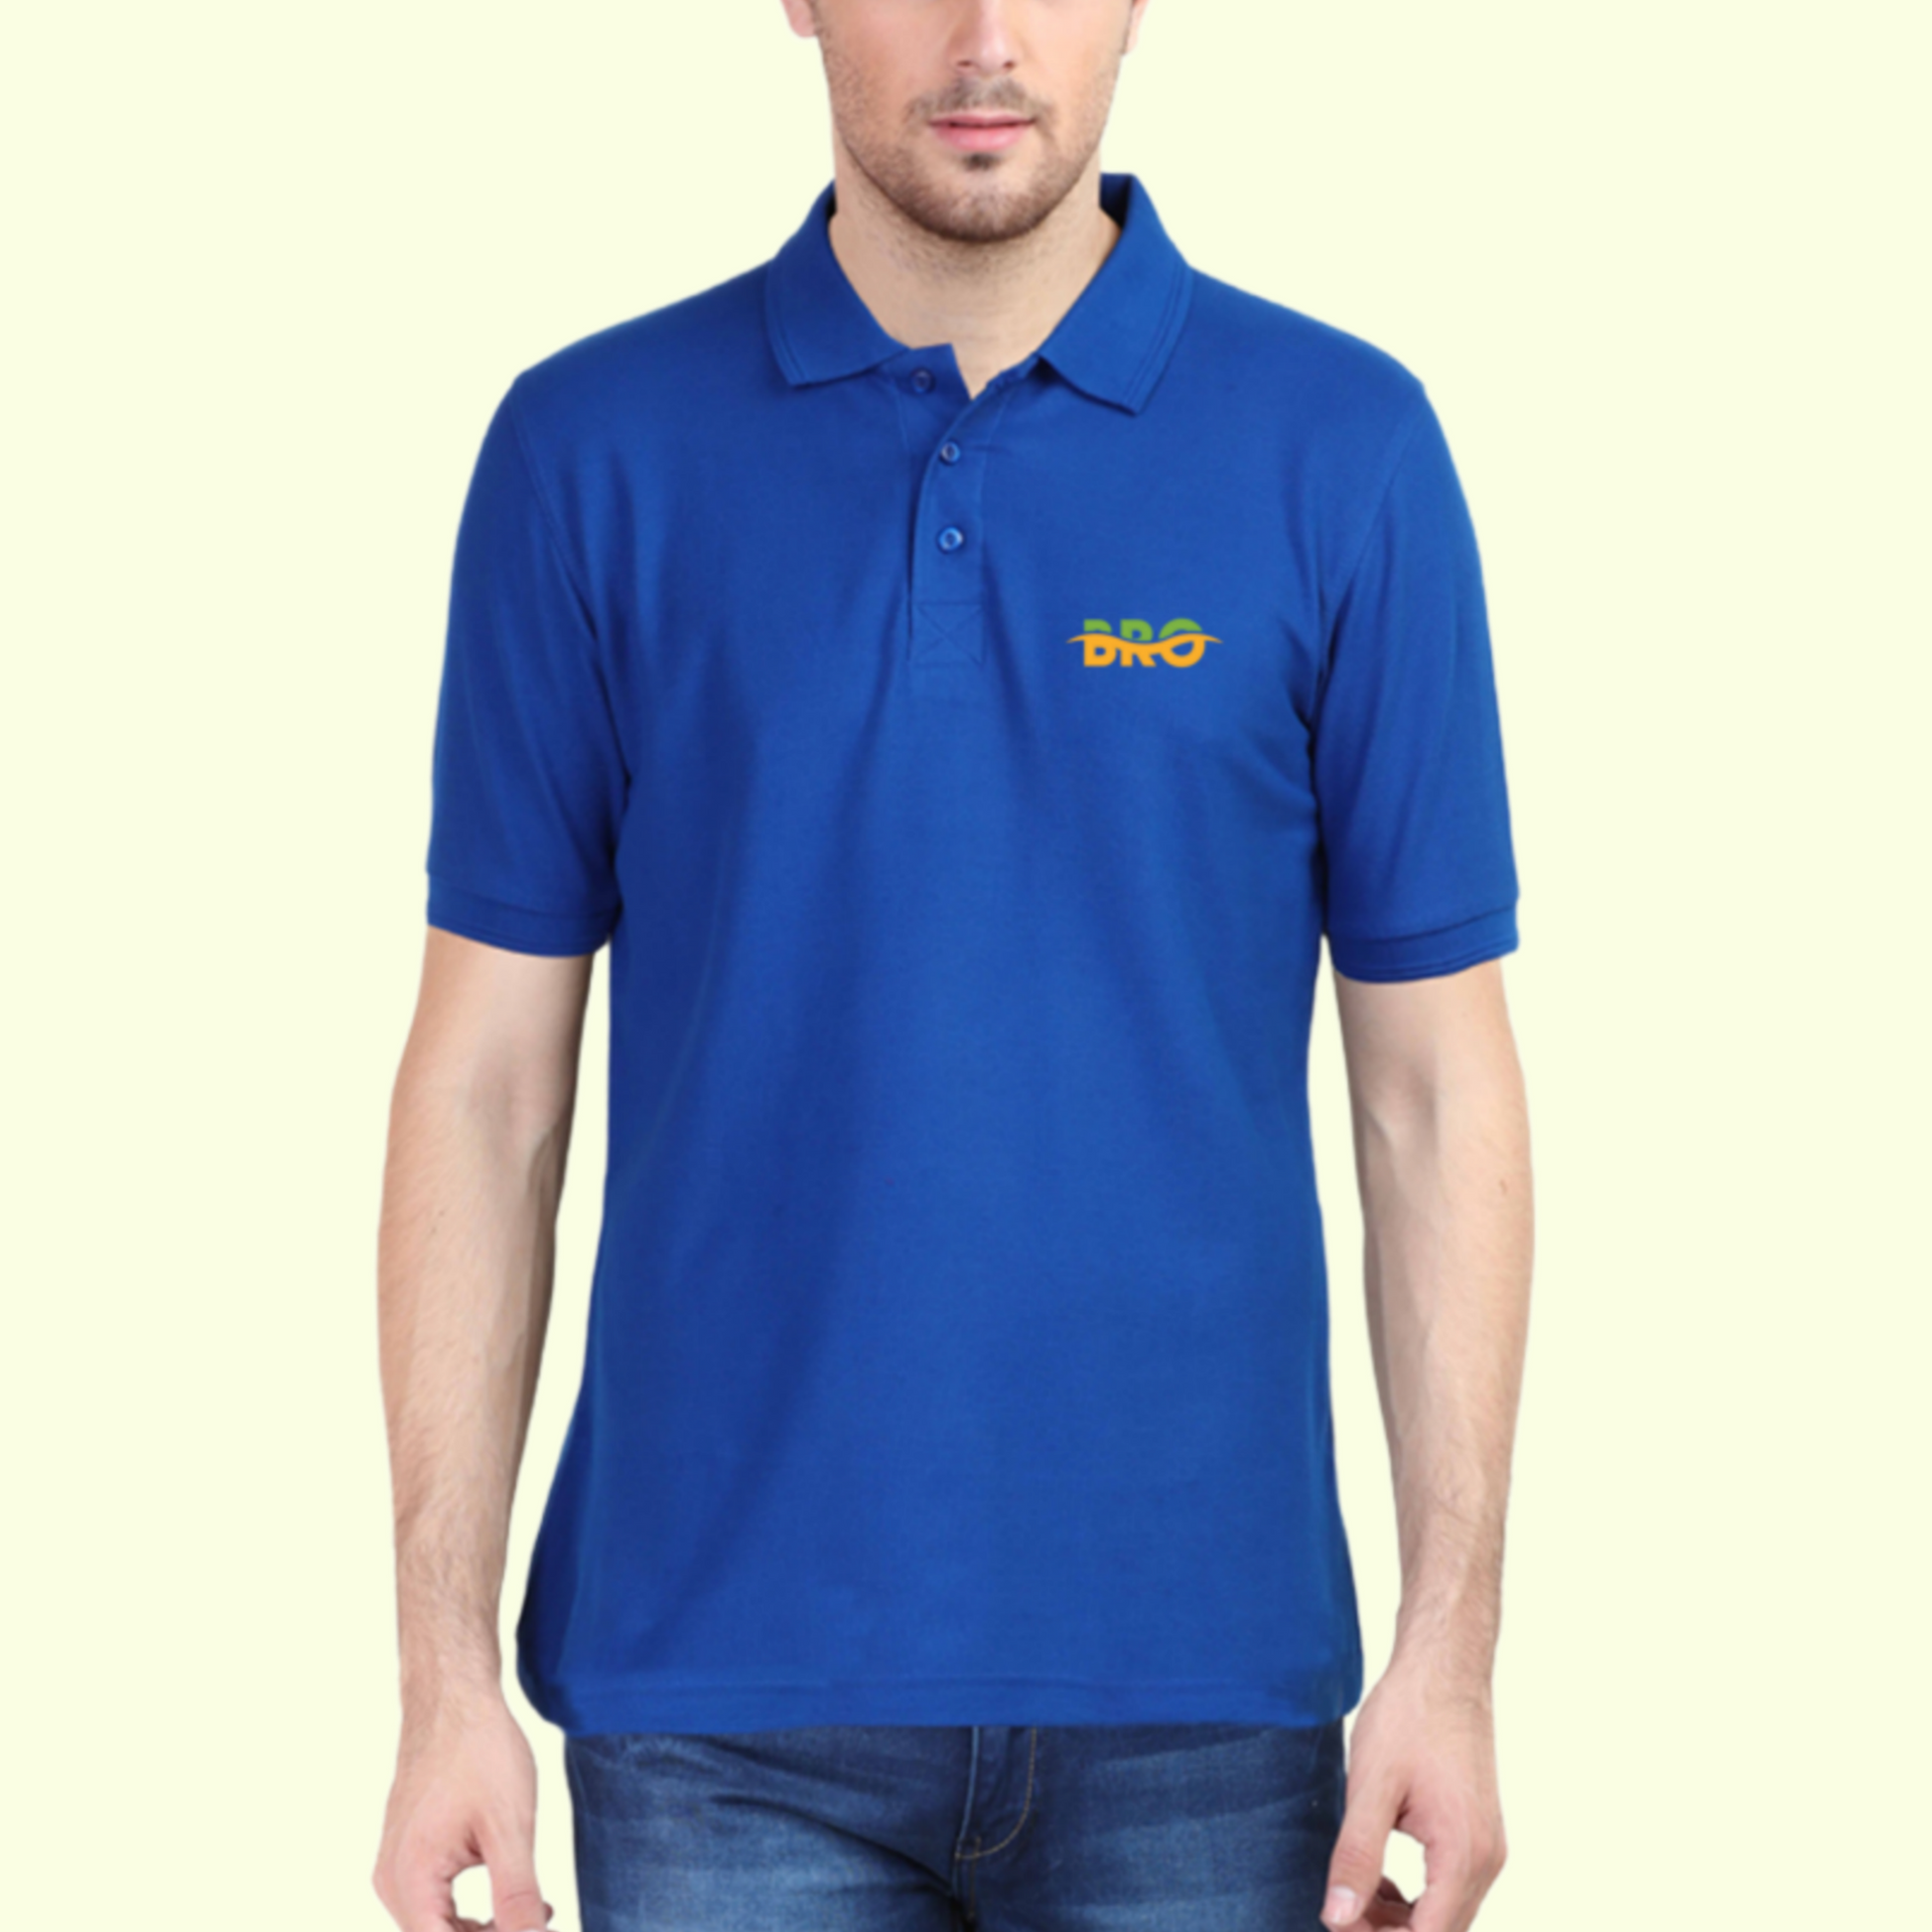 Polo T-shirt Royal Blue with Bro Graphics